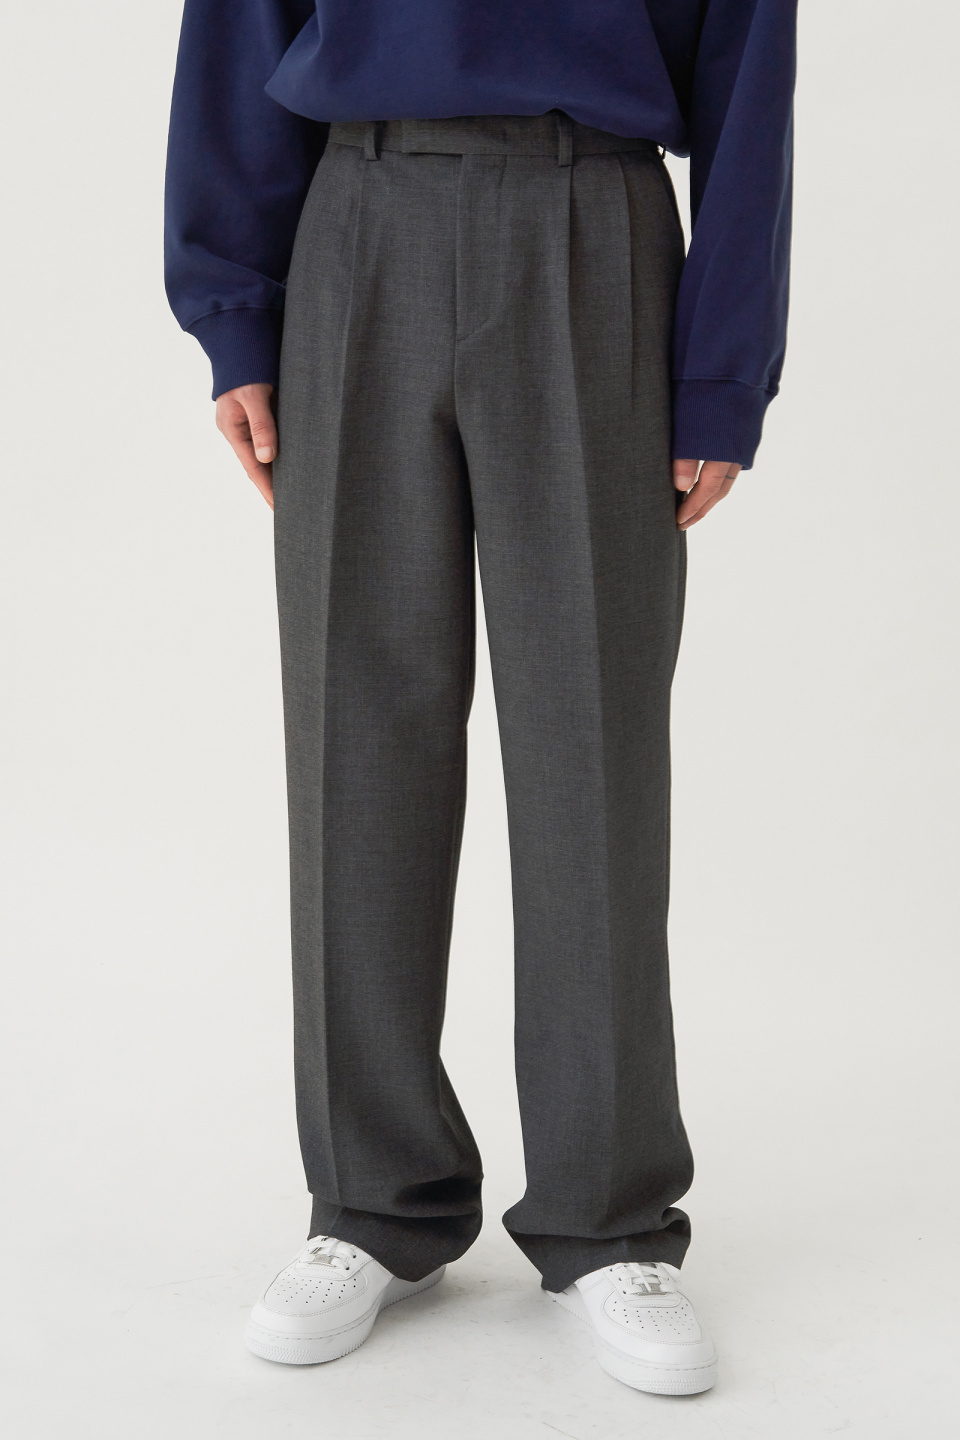 하이파이펑크(HIFIFNK) Pintuck Wide Trousers_Grey - 64,000 | 무신사 